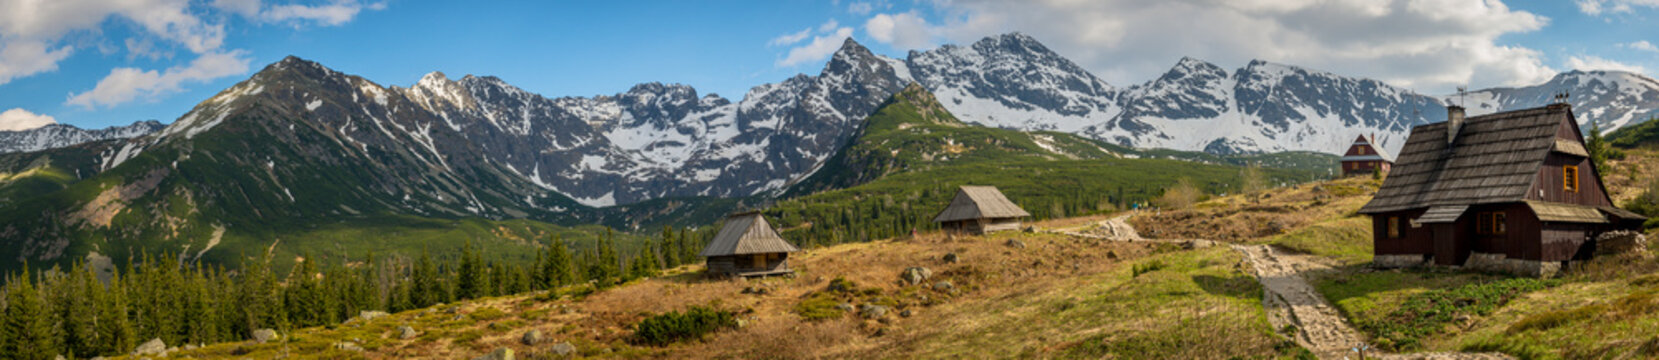 Hala Gasienicowa in Tatra Mountains - panorama © grzegorz_pakula